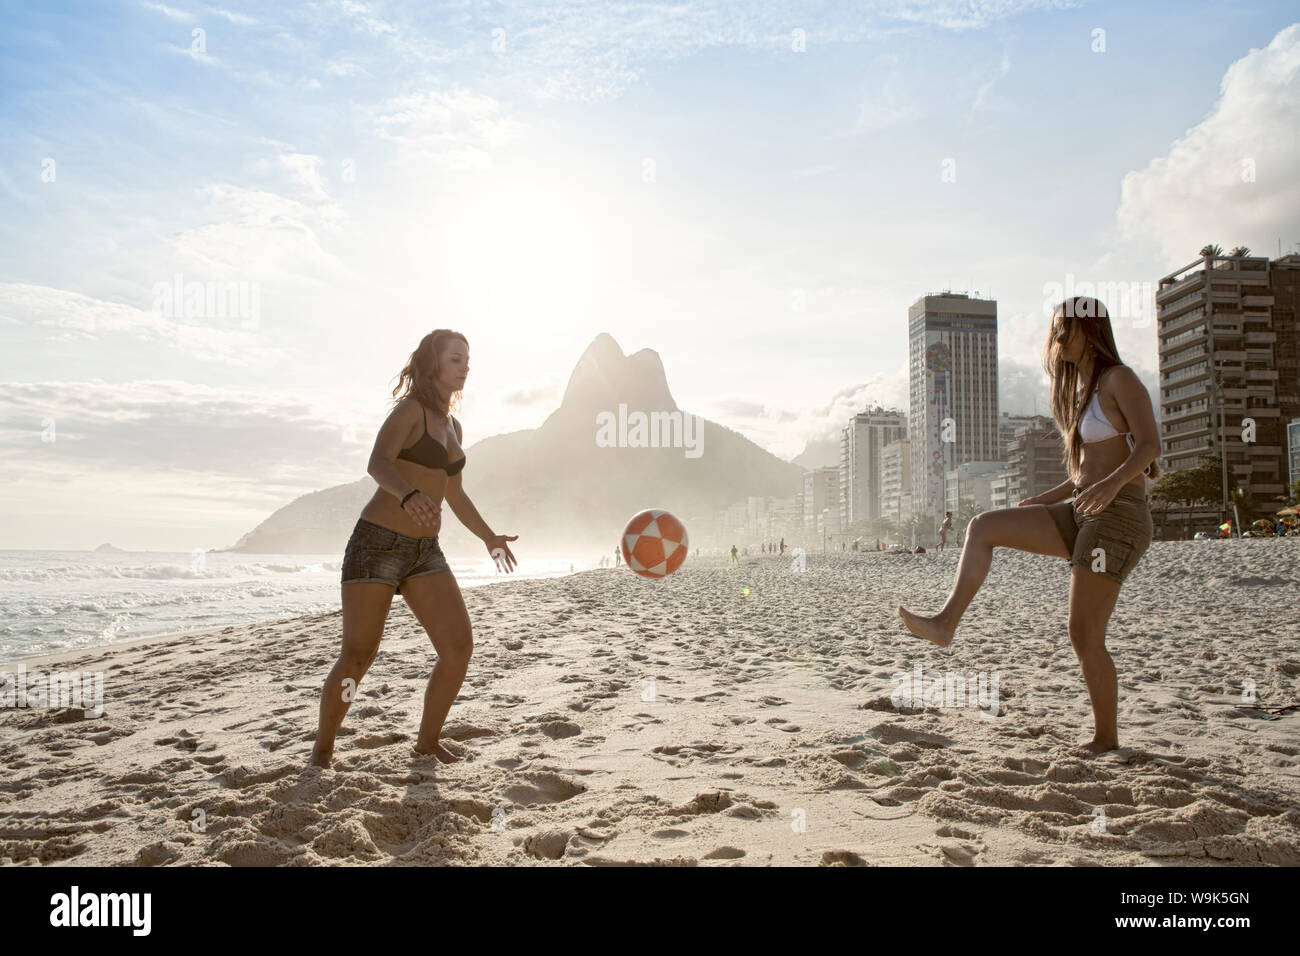 Les femmes à l'altinha (football) sur la plage d'Ipanema, Rio de Janeiro, Brésil, Amérique du Sud Banque D'Images